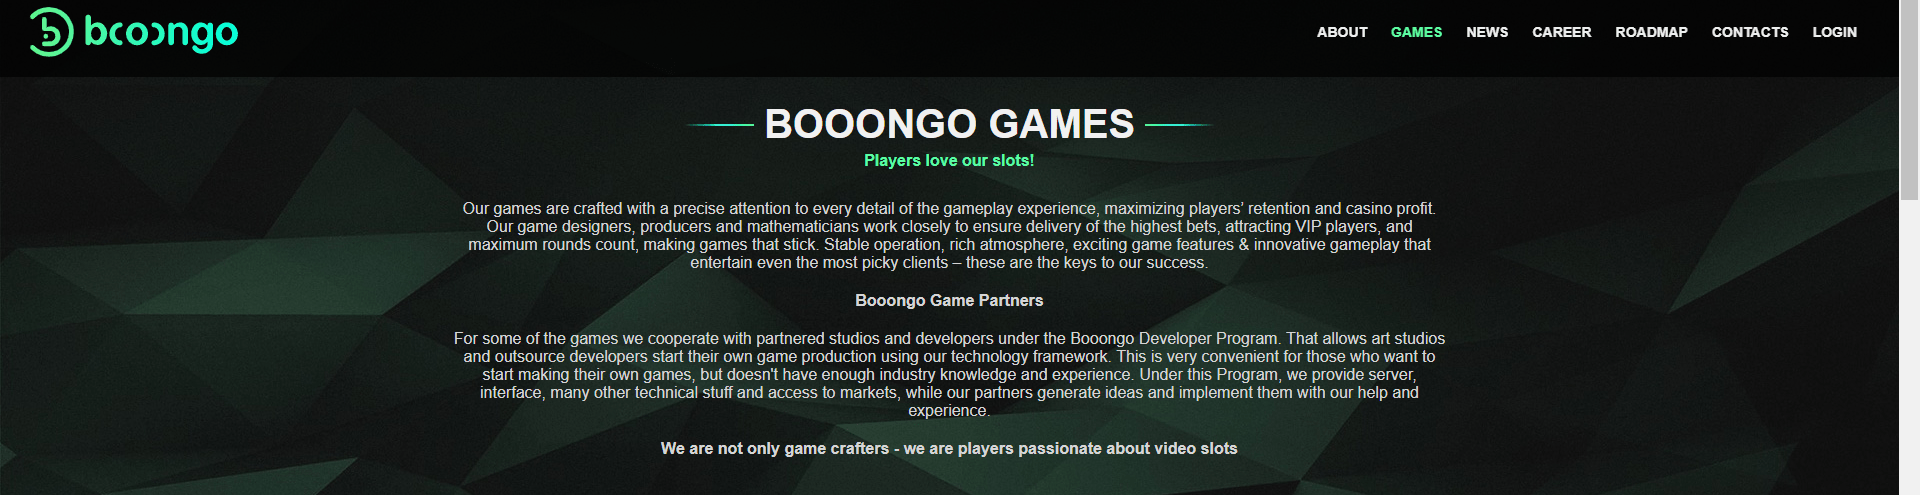 Booongo Games